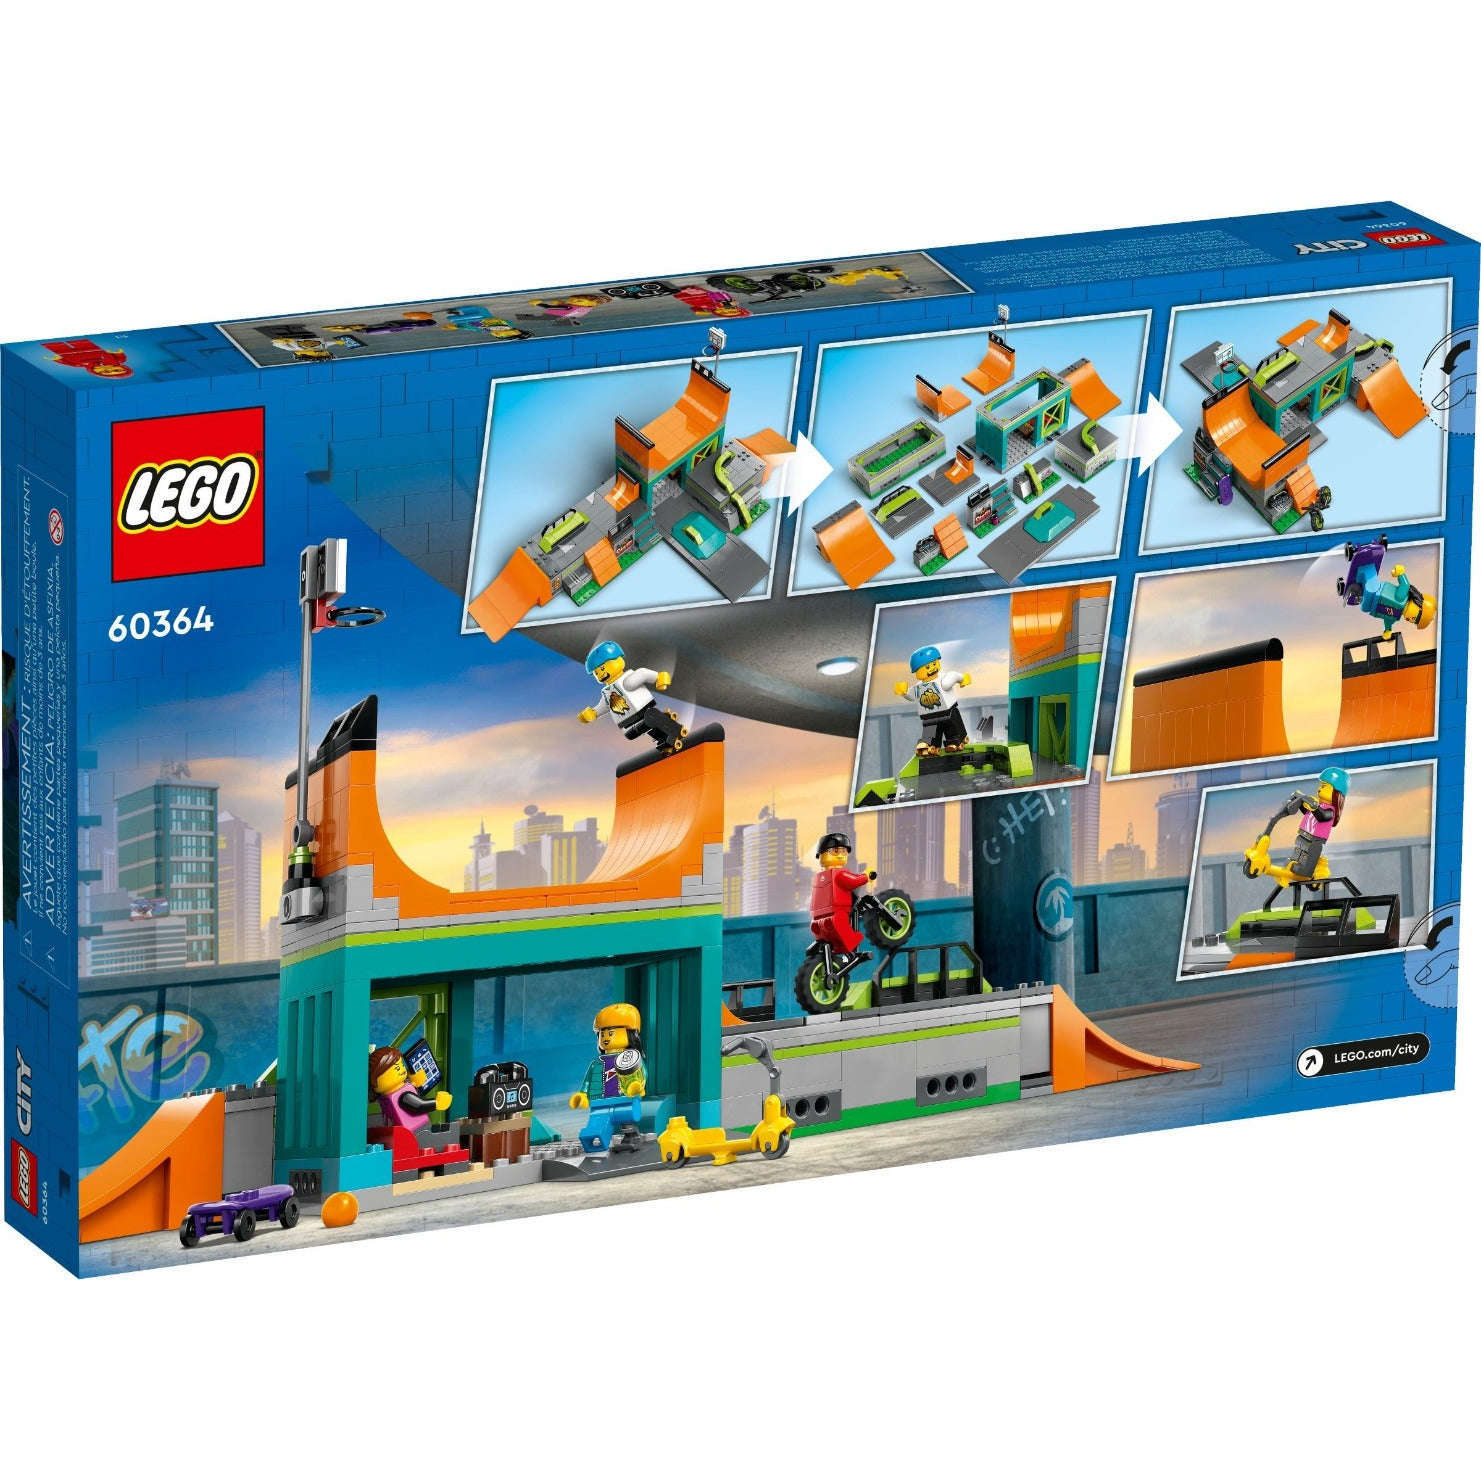 Toys N Tuck:Lego 60364 City Street Skate Park,Lego City